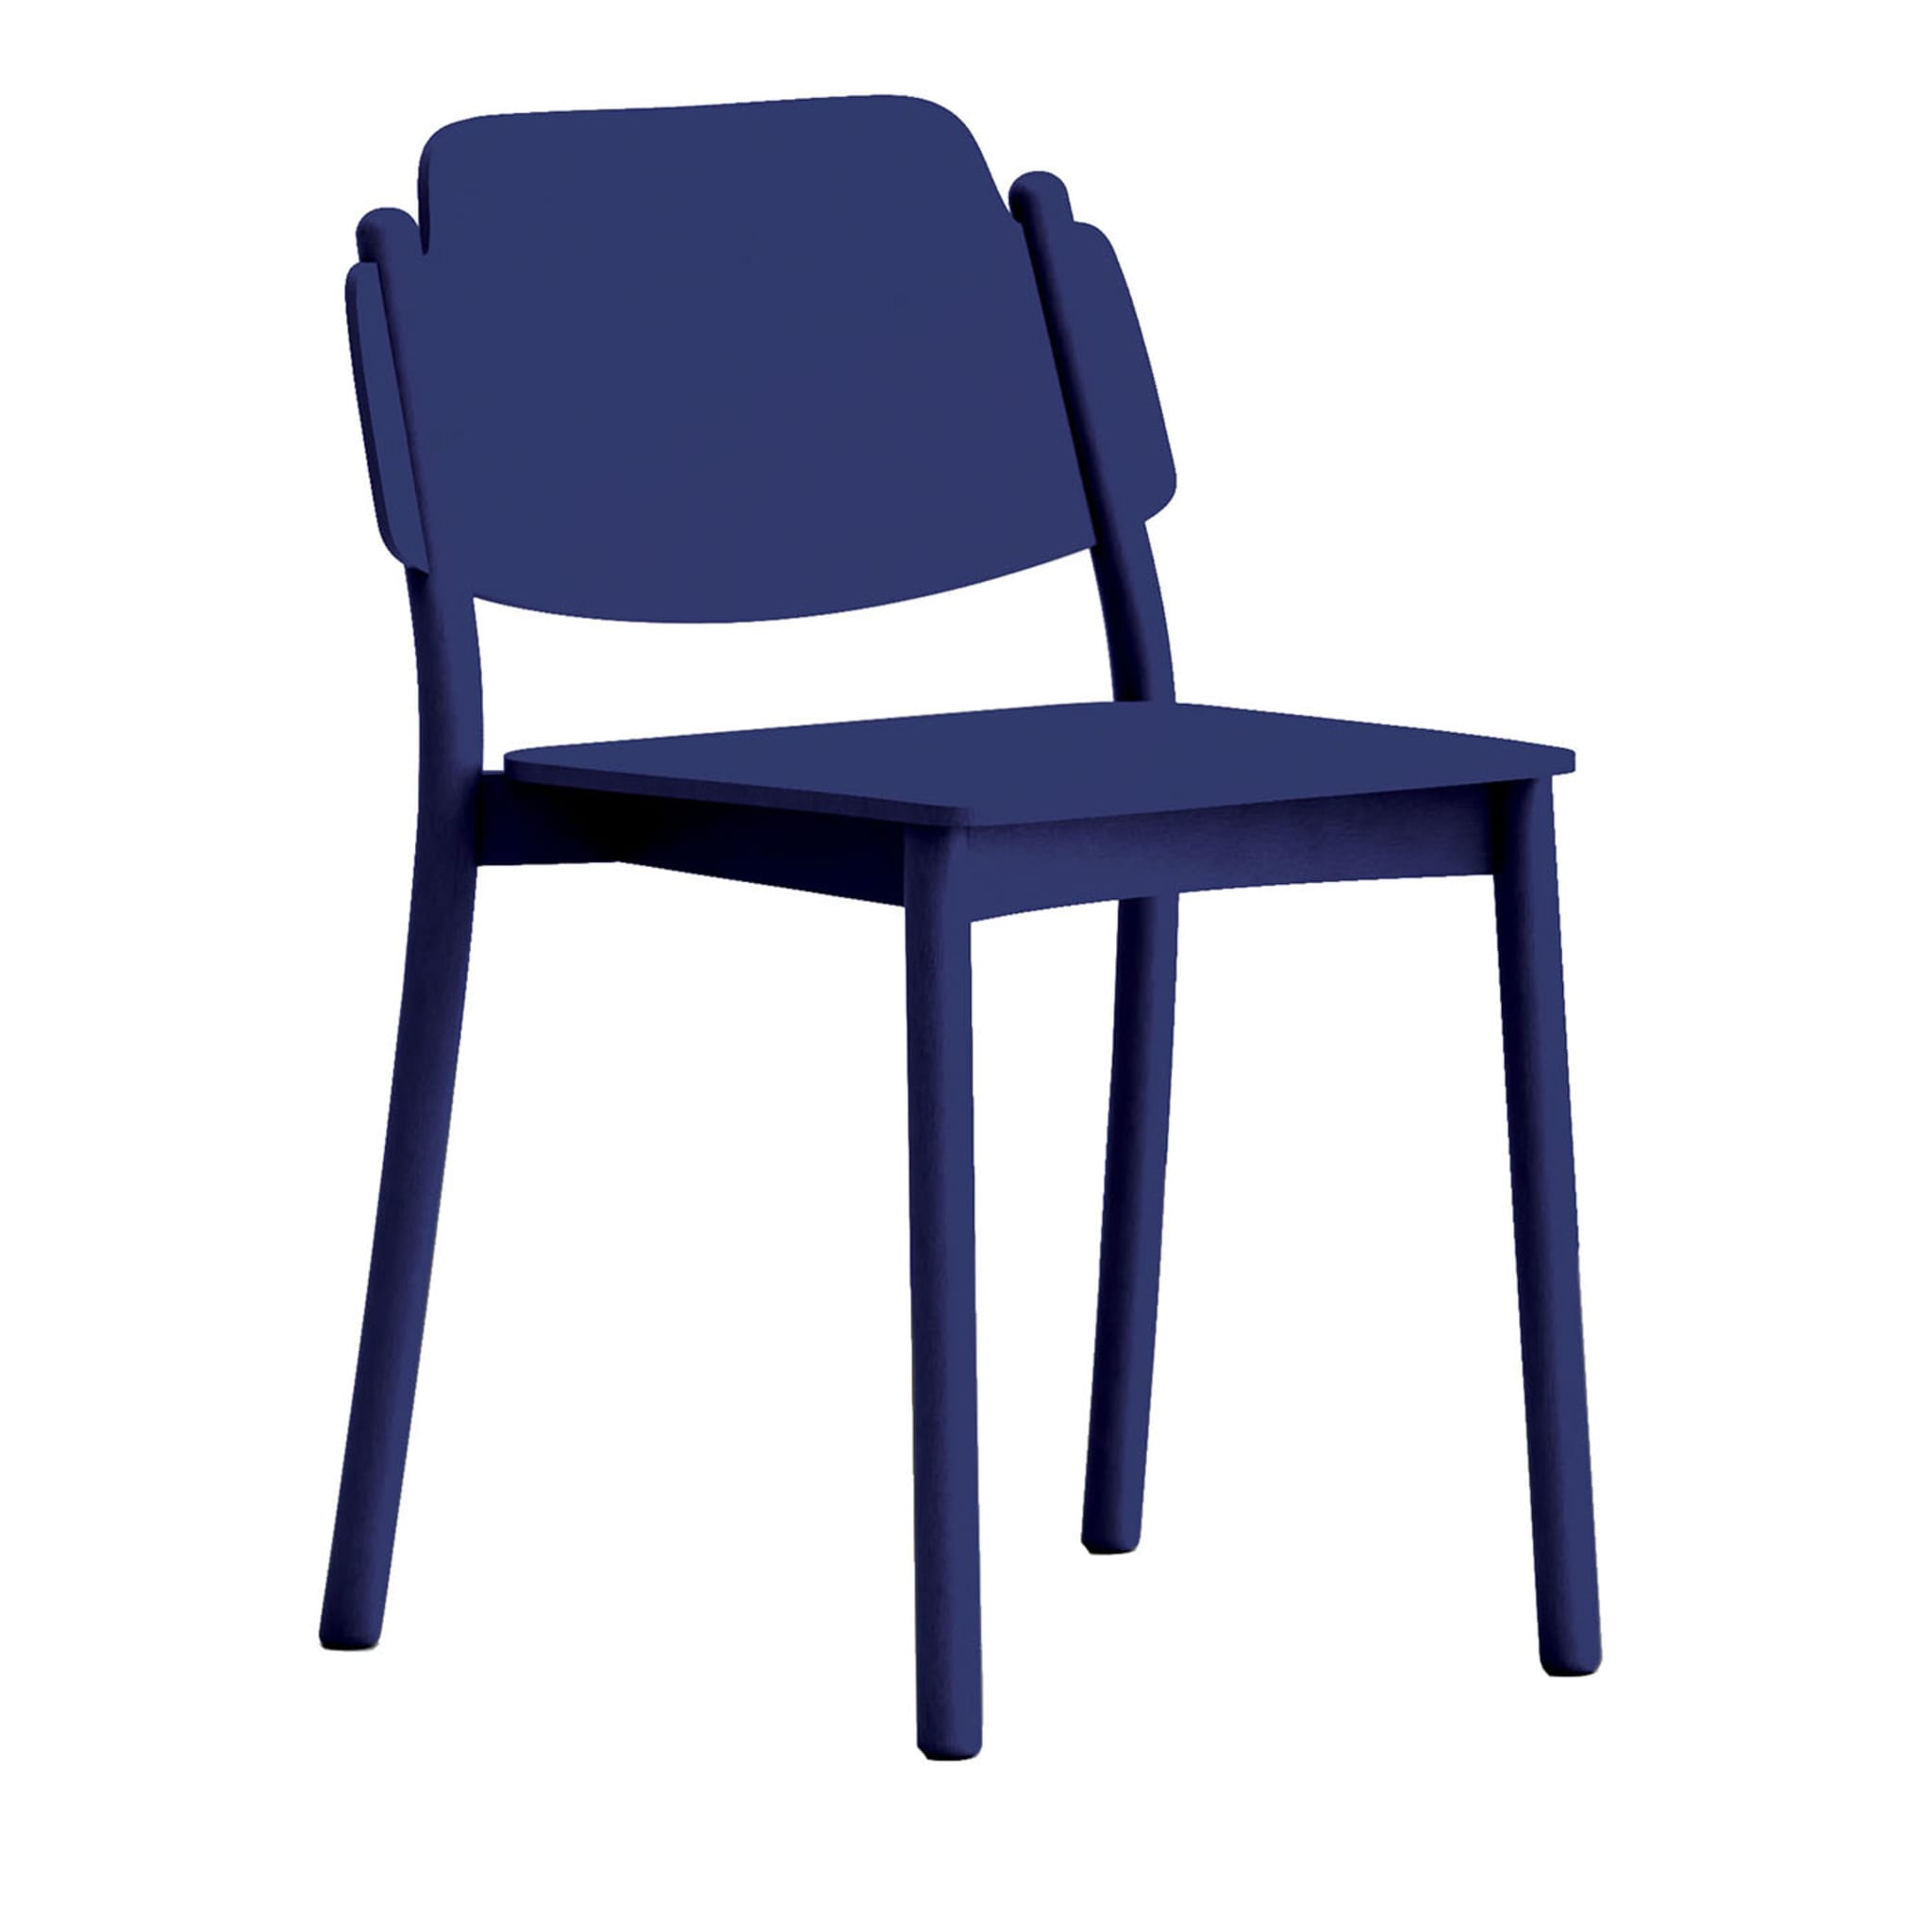 Mein Stuhl Blauer Stuhl von Emilio Nanni - Hauptansicht